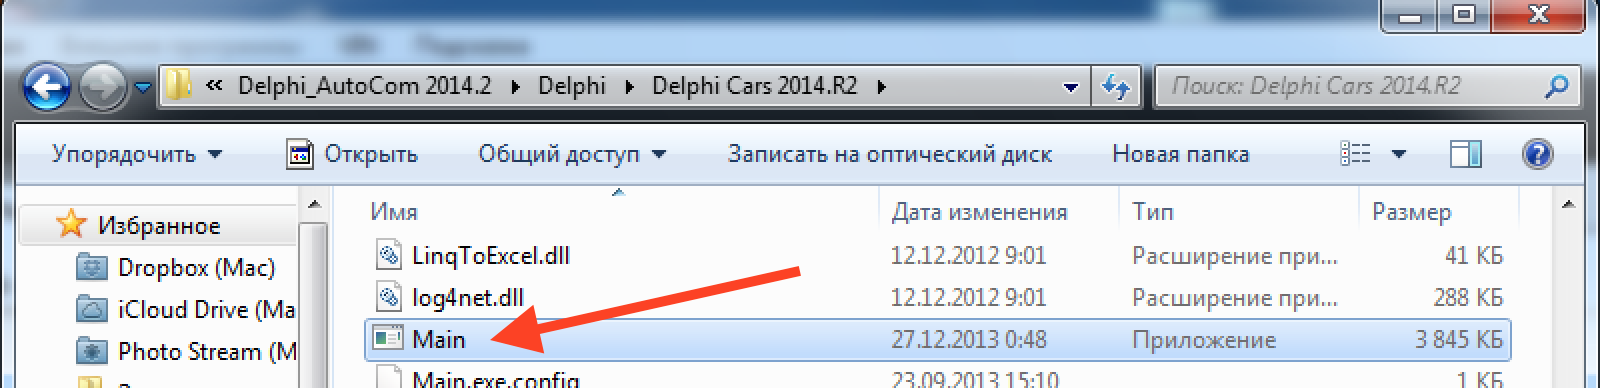 Обновление AutoCom Delphi до версии 2014.2.2